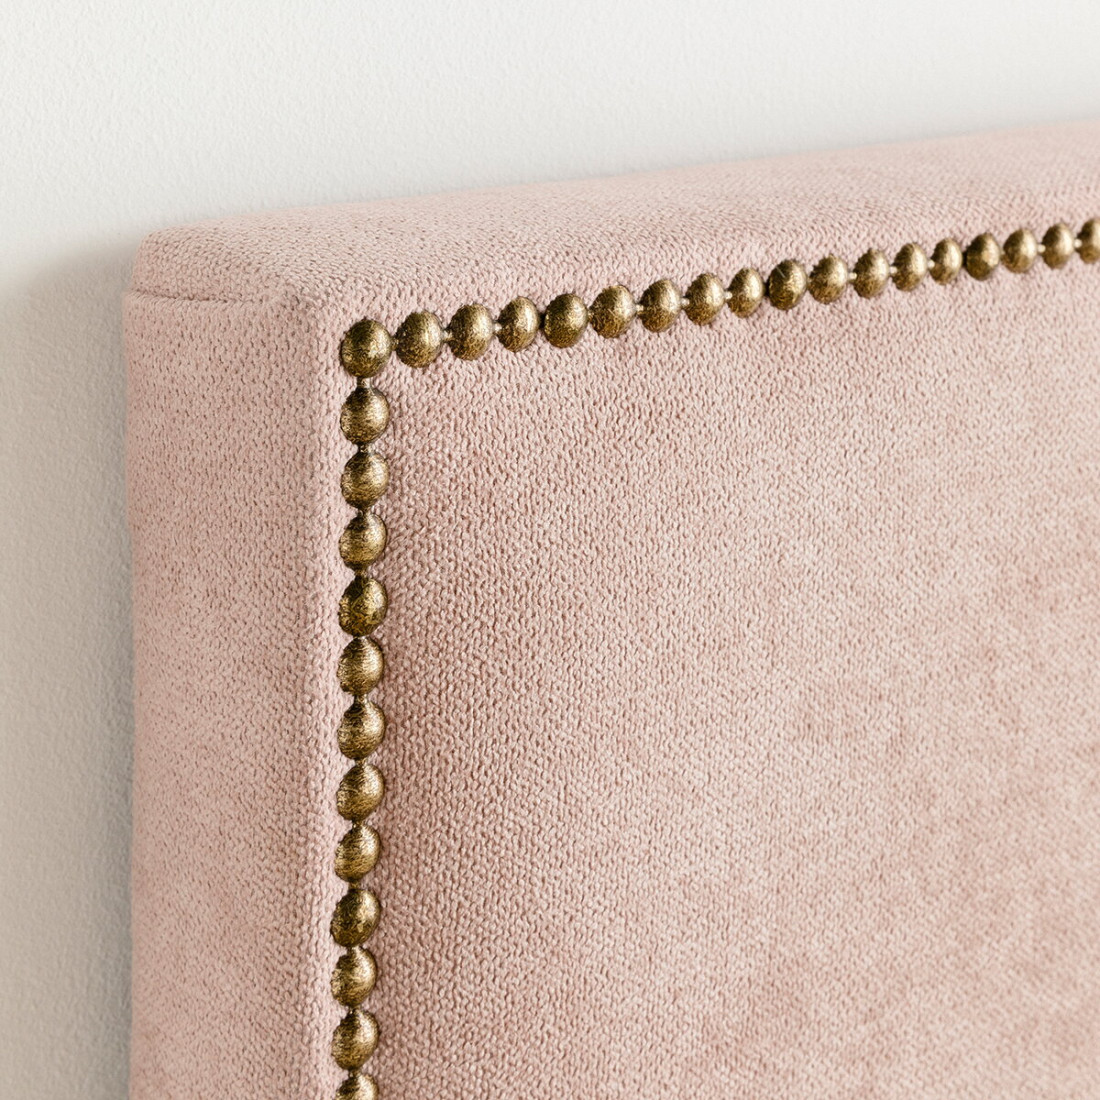 Cabecero infantil personalizable Solum Medidas cabeceros Para cama de 90 cm  Colores tapizados Nido 14 rosa | Kenayhome